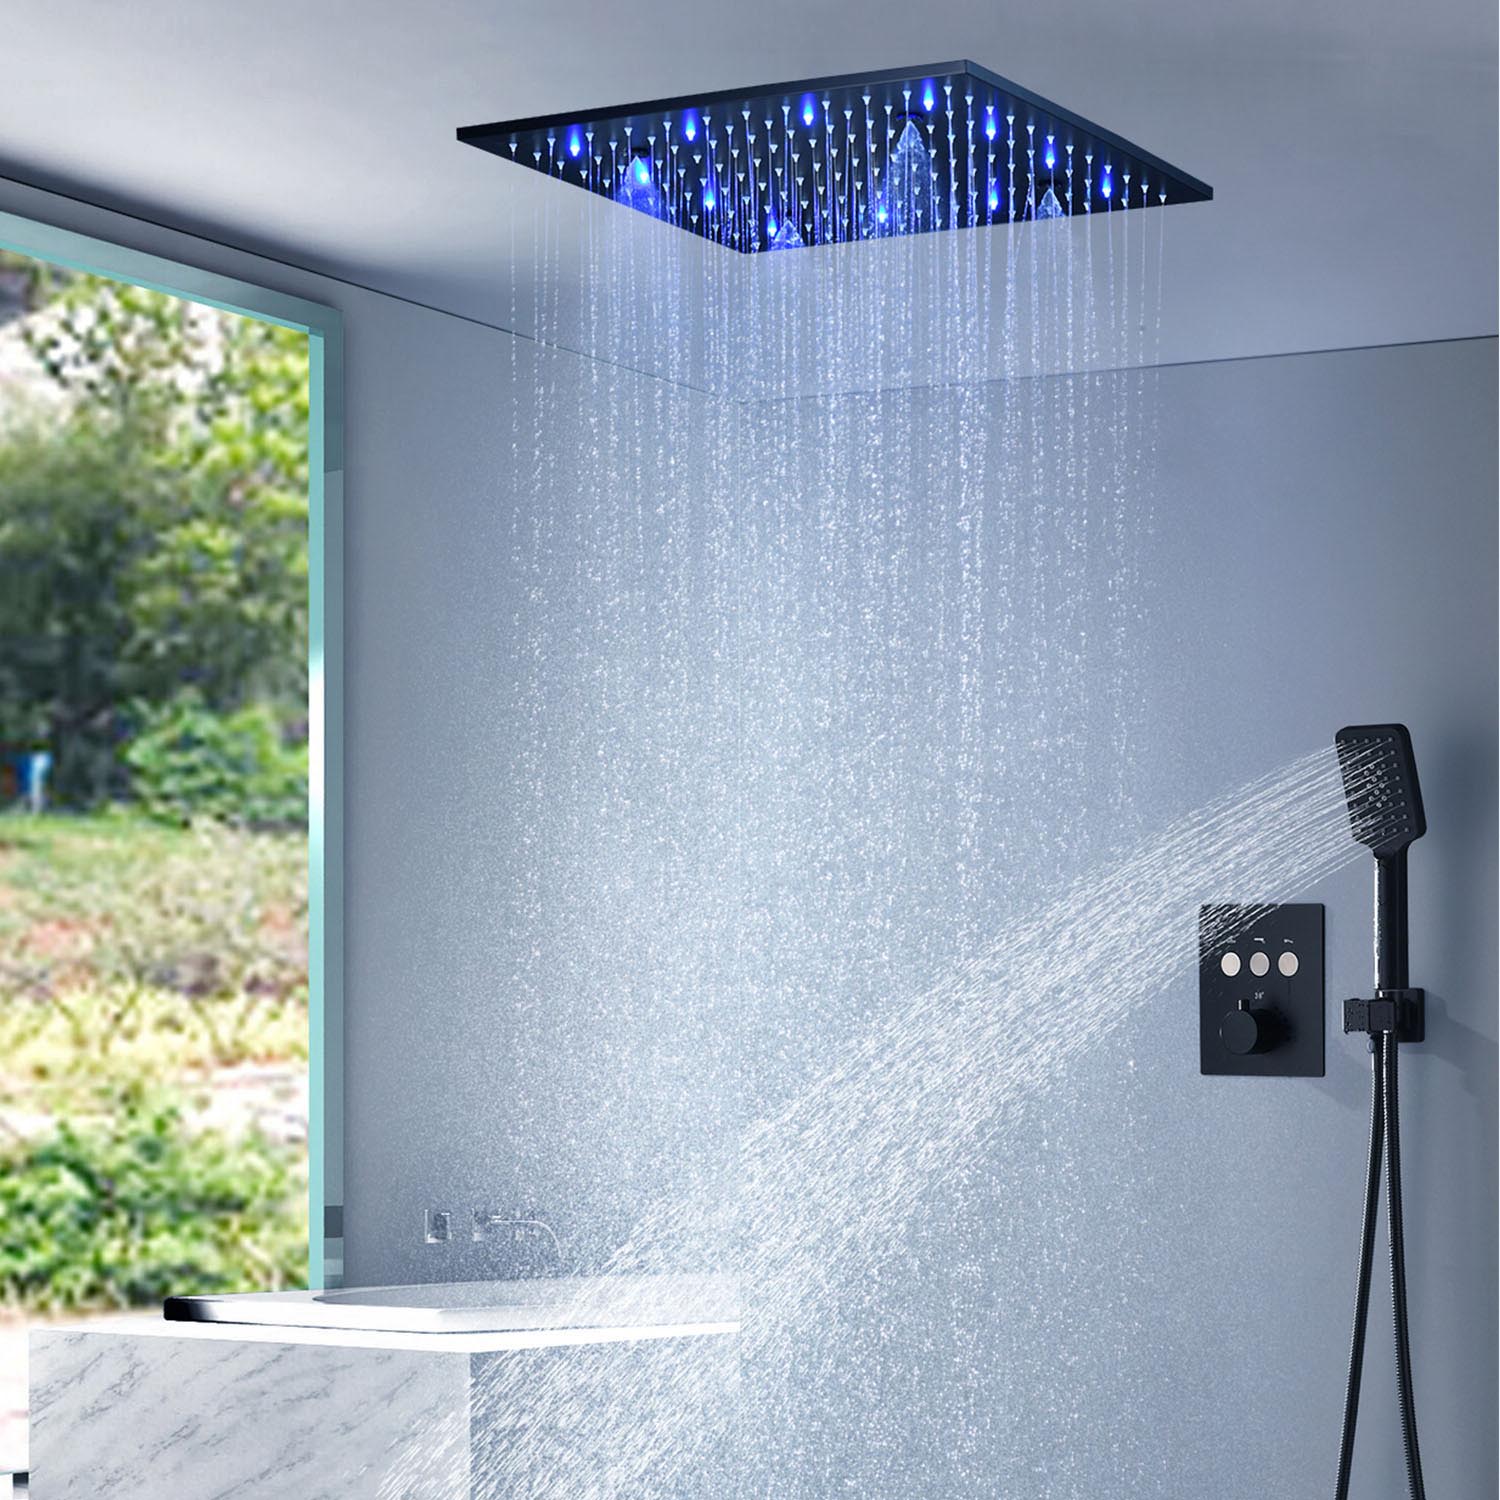 LED埋込形シャワー水栓 サーモスタット式混合栓 シャワーシステム シャワーヘッド+ハンドシャワー 黒色